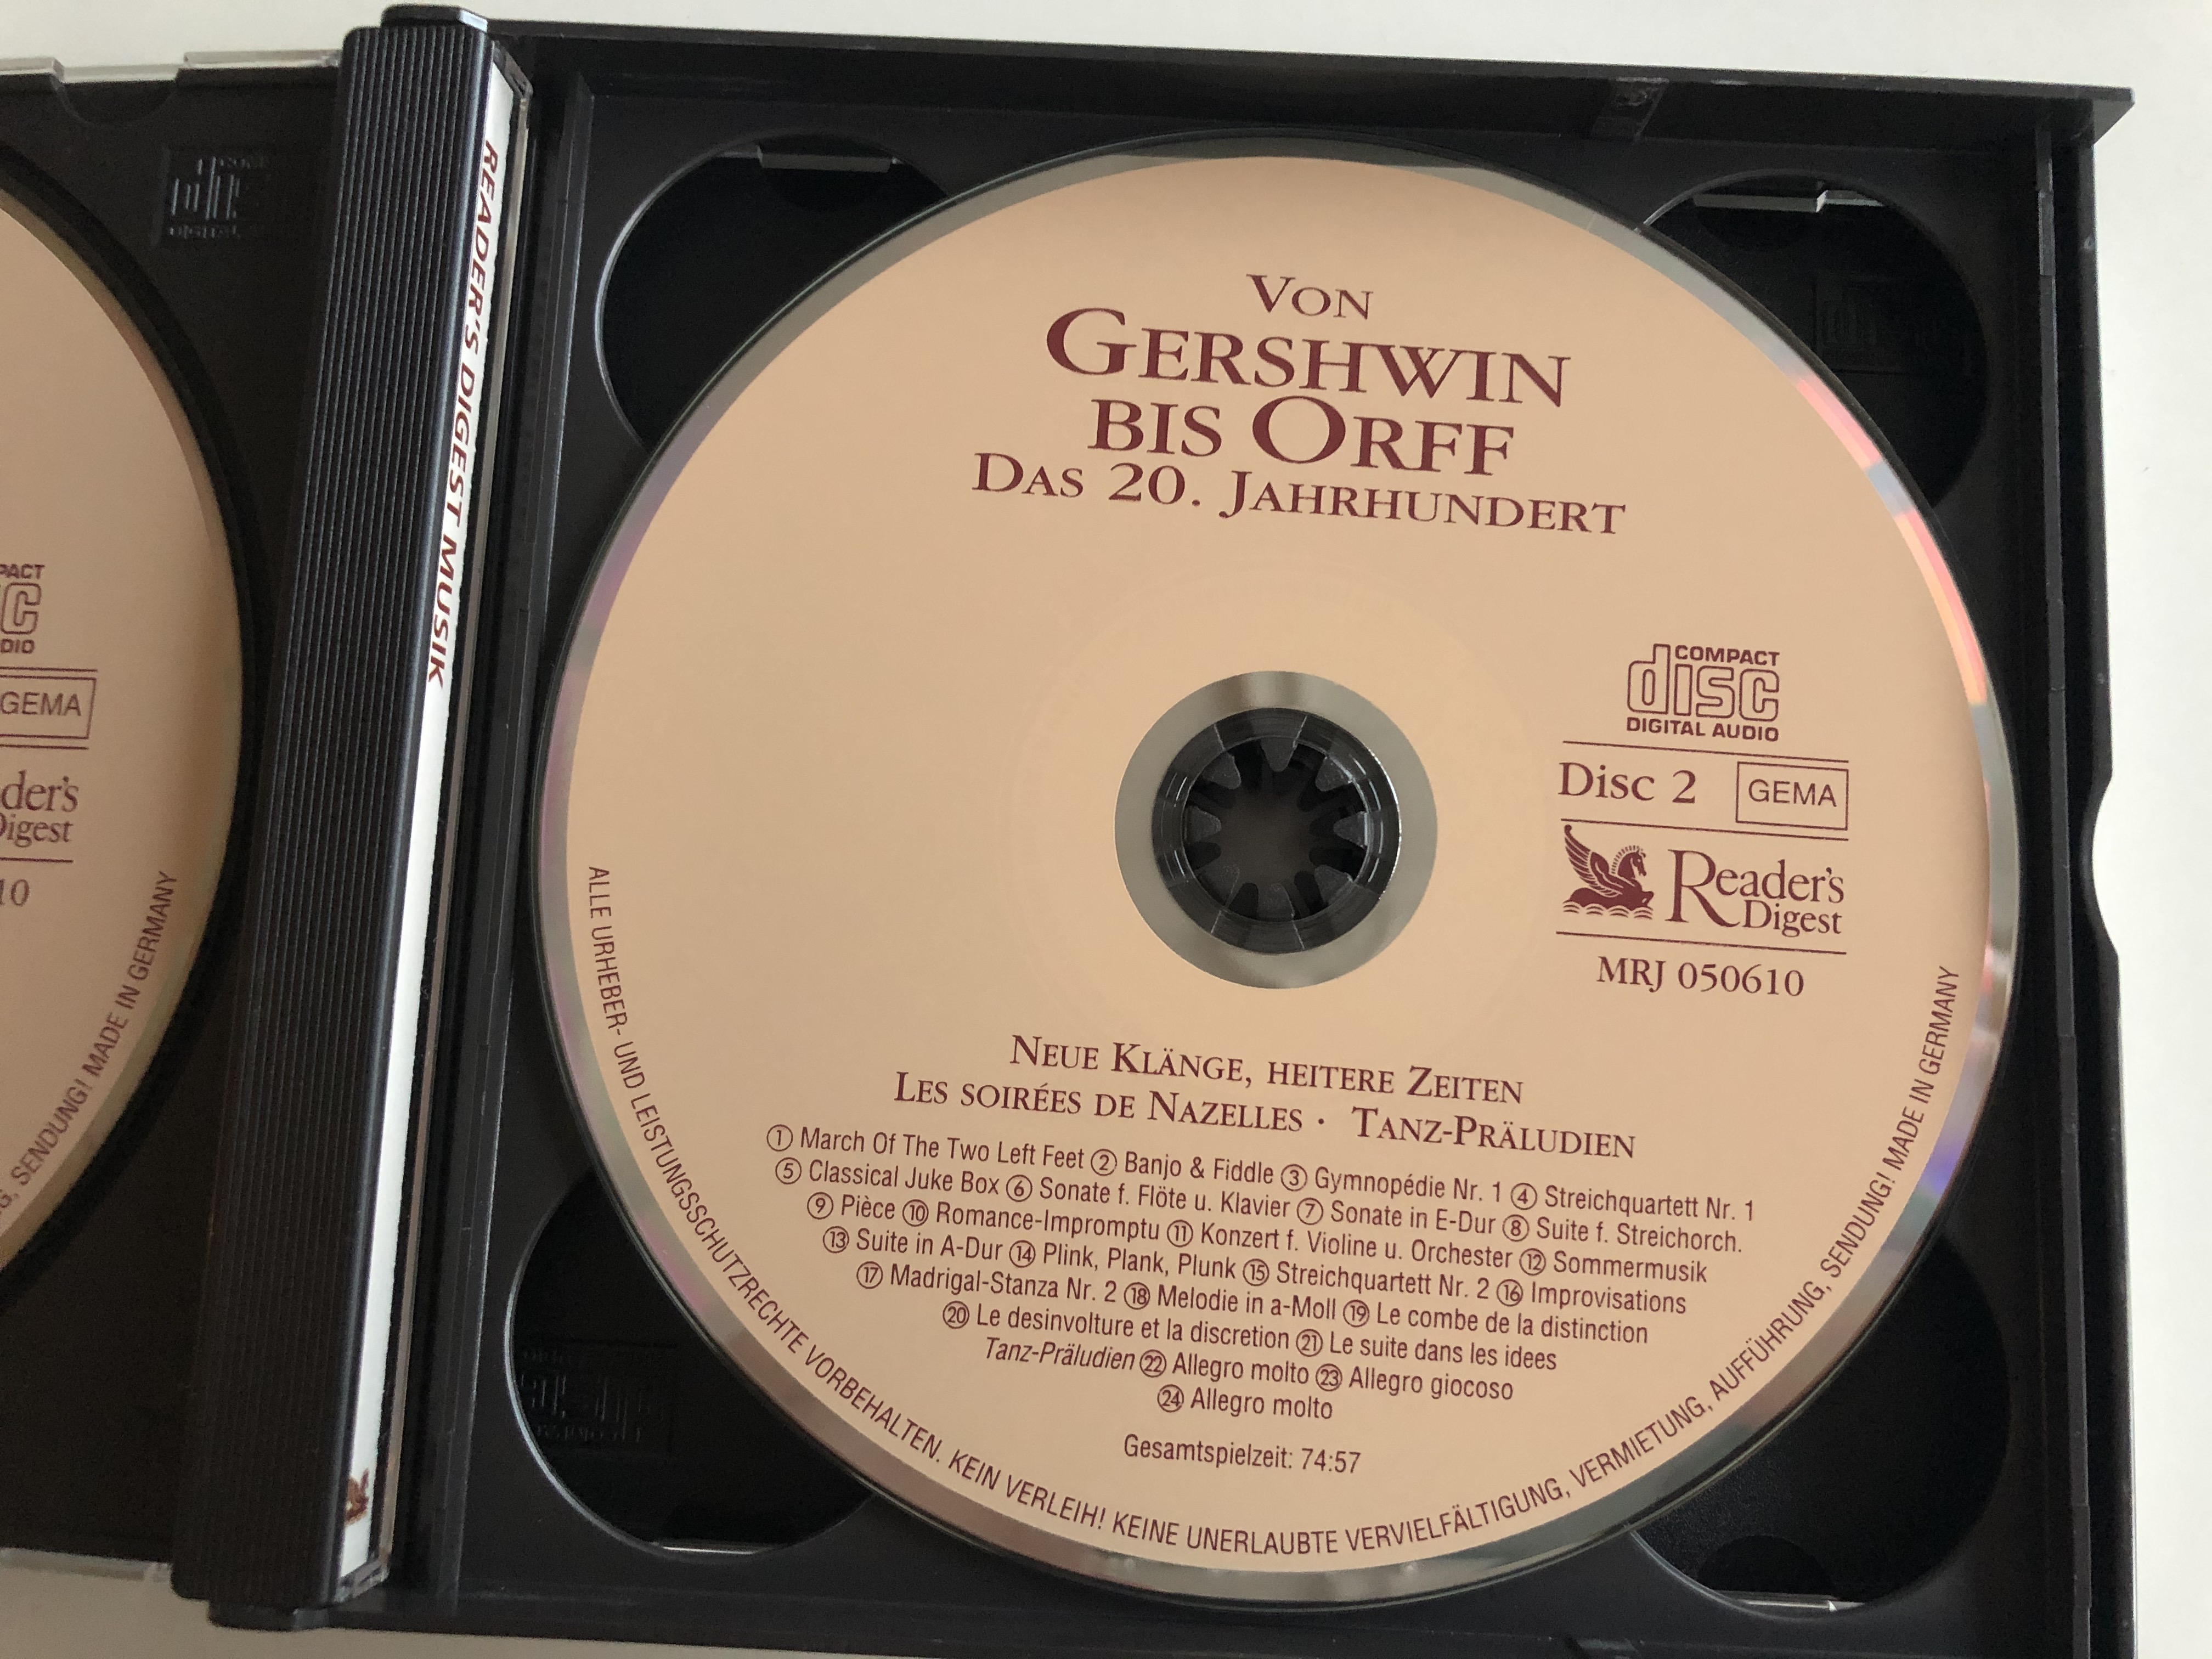 von-gershwin-bis-orff-das-20.-jahrhundert-musikalische-reise-durchs-jahrtausend-reader-s-digest-box-set-3x-audio-cd-2001-mrj-050610-12-.jpg